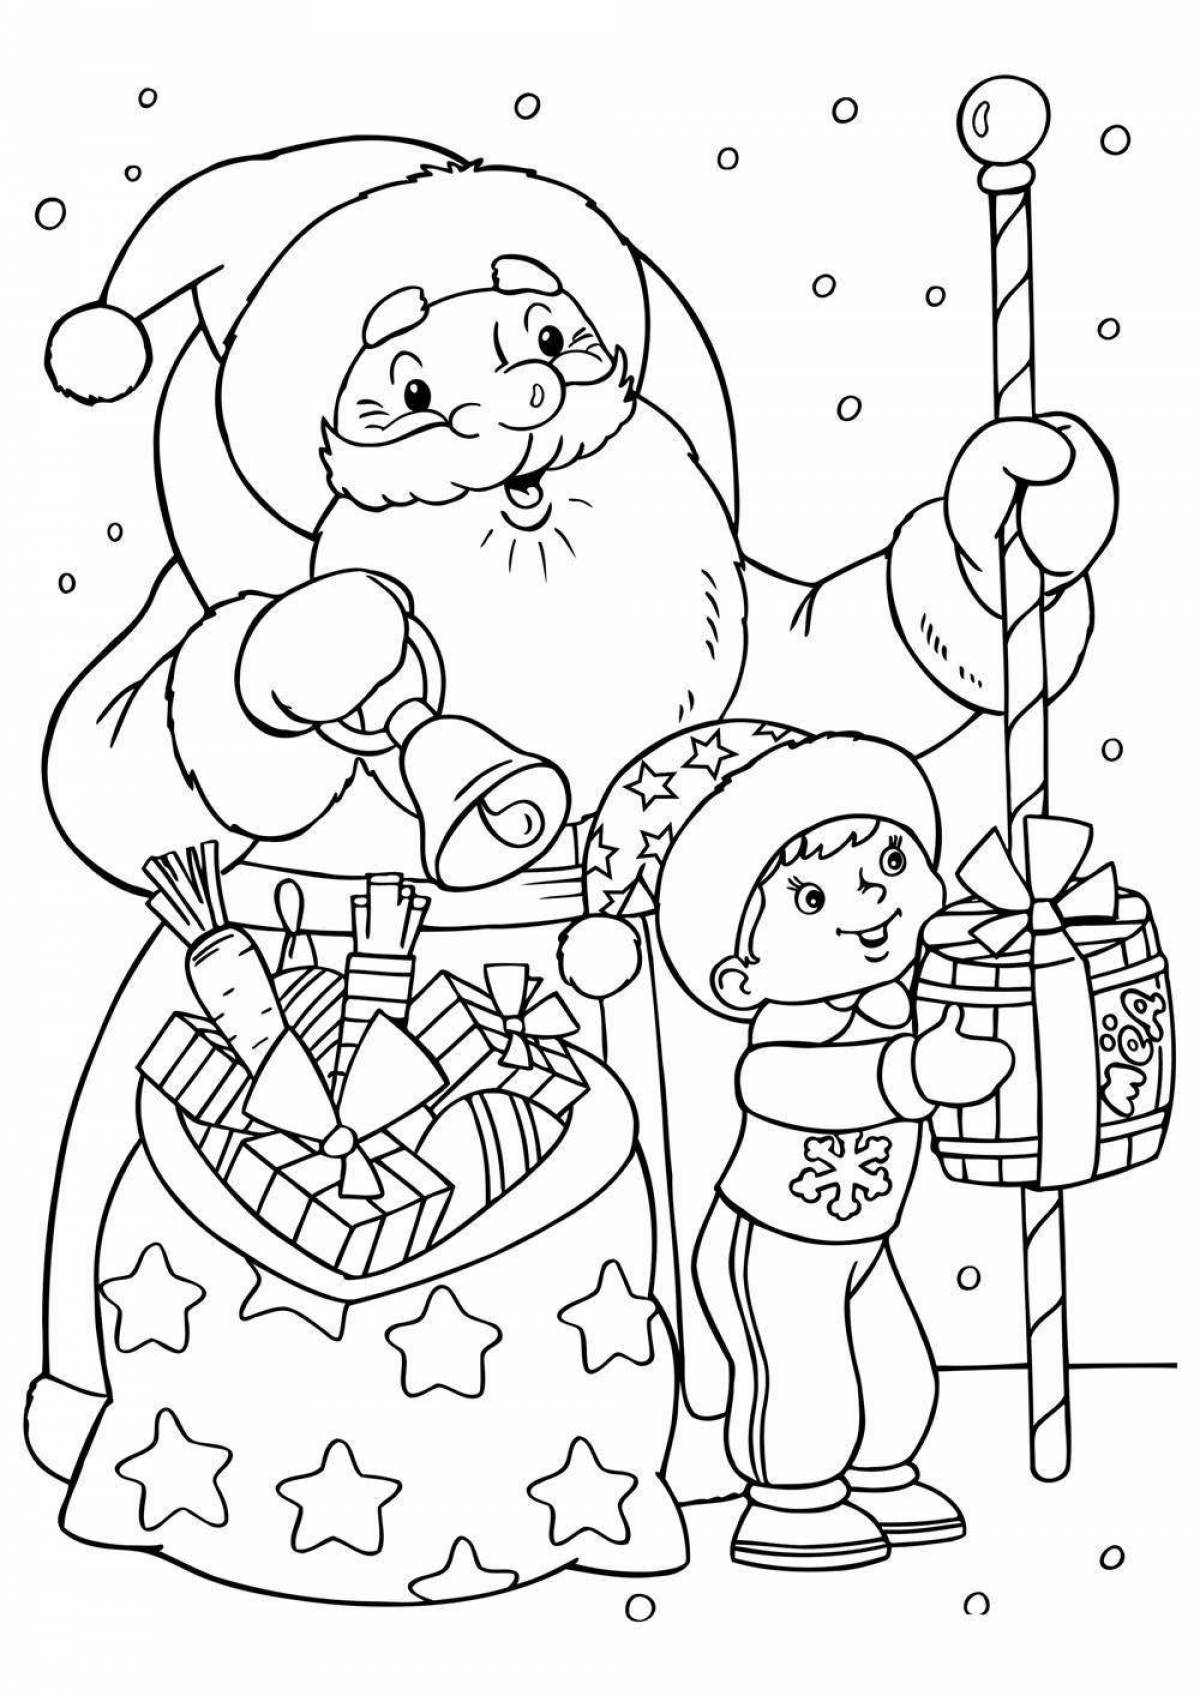 Cute santa claus coloring book for kids